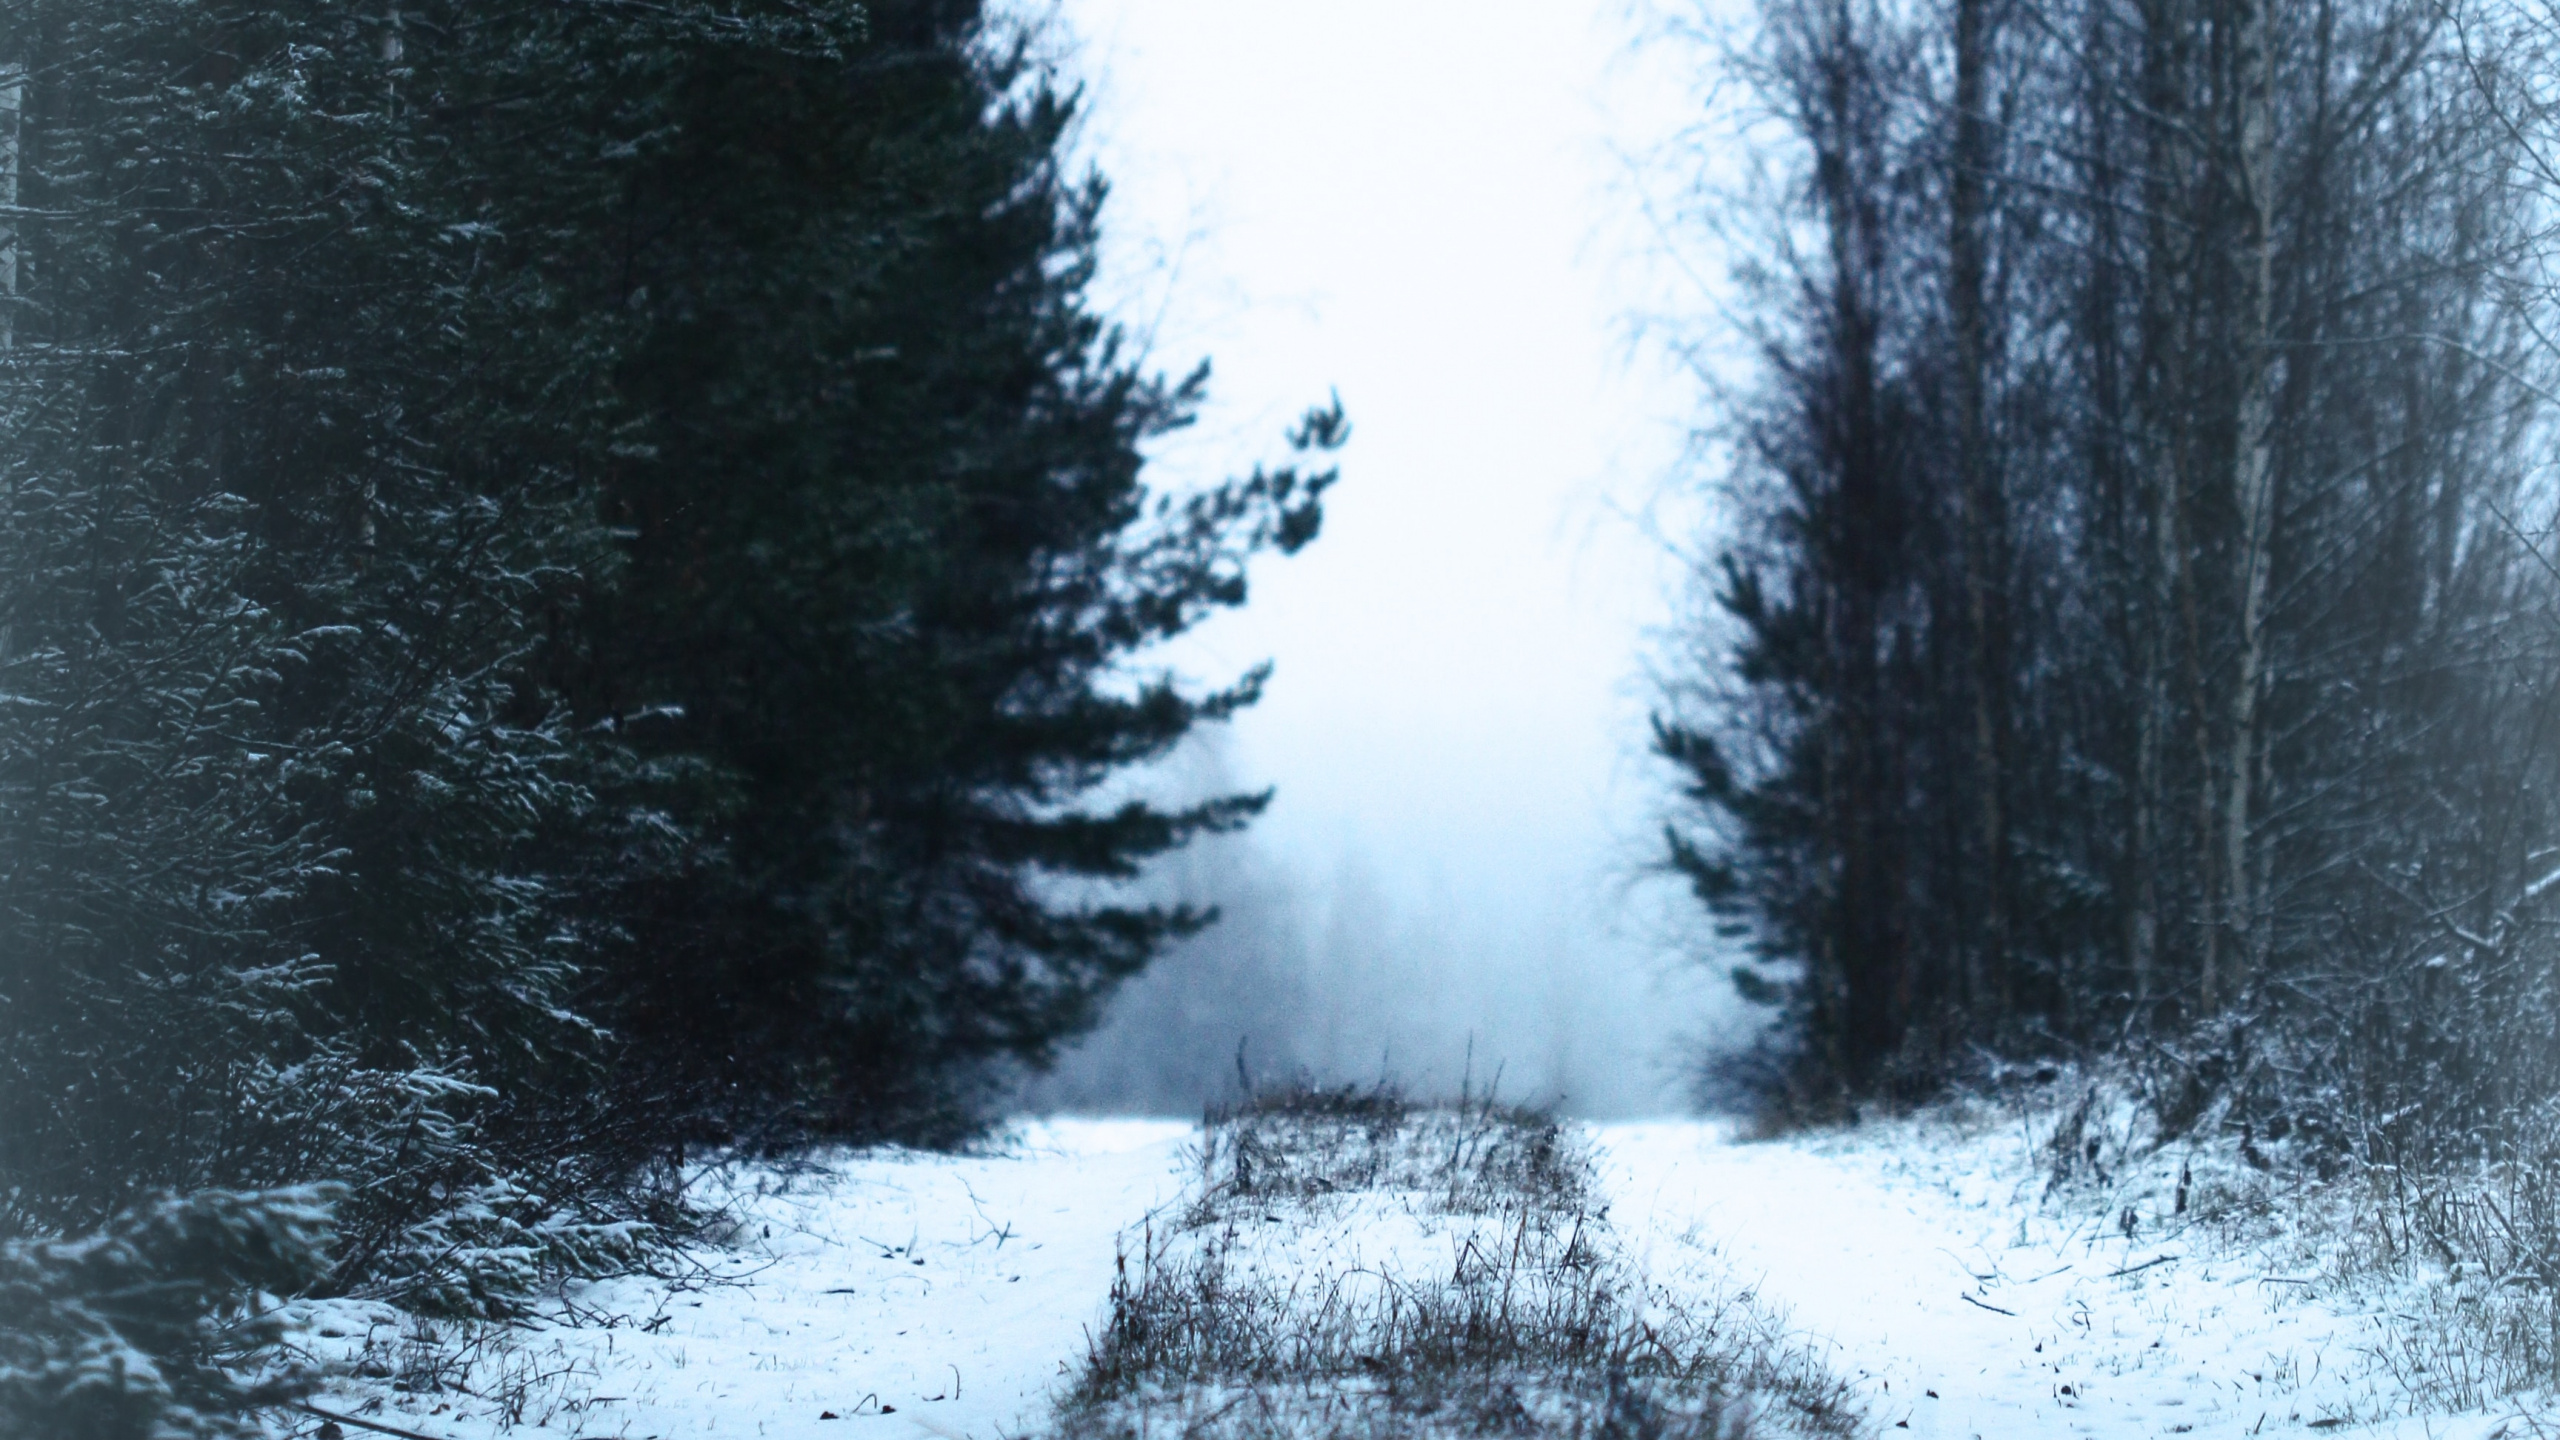 冬天, 性质, 冻结, 森林, 自然环境 壁纸 2560x1440 允许